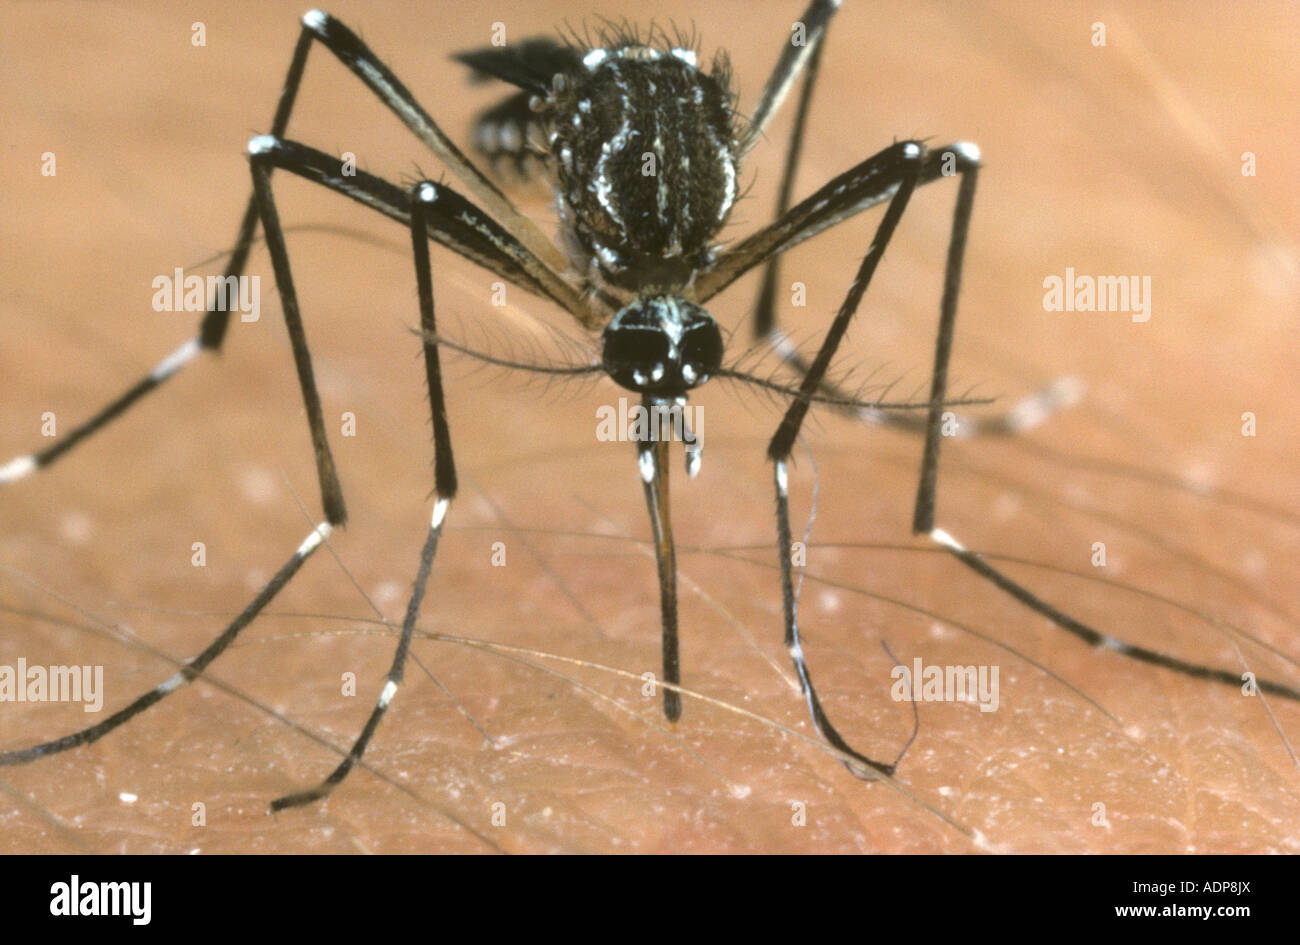 Gelbfieber Vektor Mücke Aedes Aegypti Fütterung auf einem menschlichen arm Stockfoto